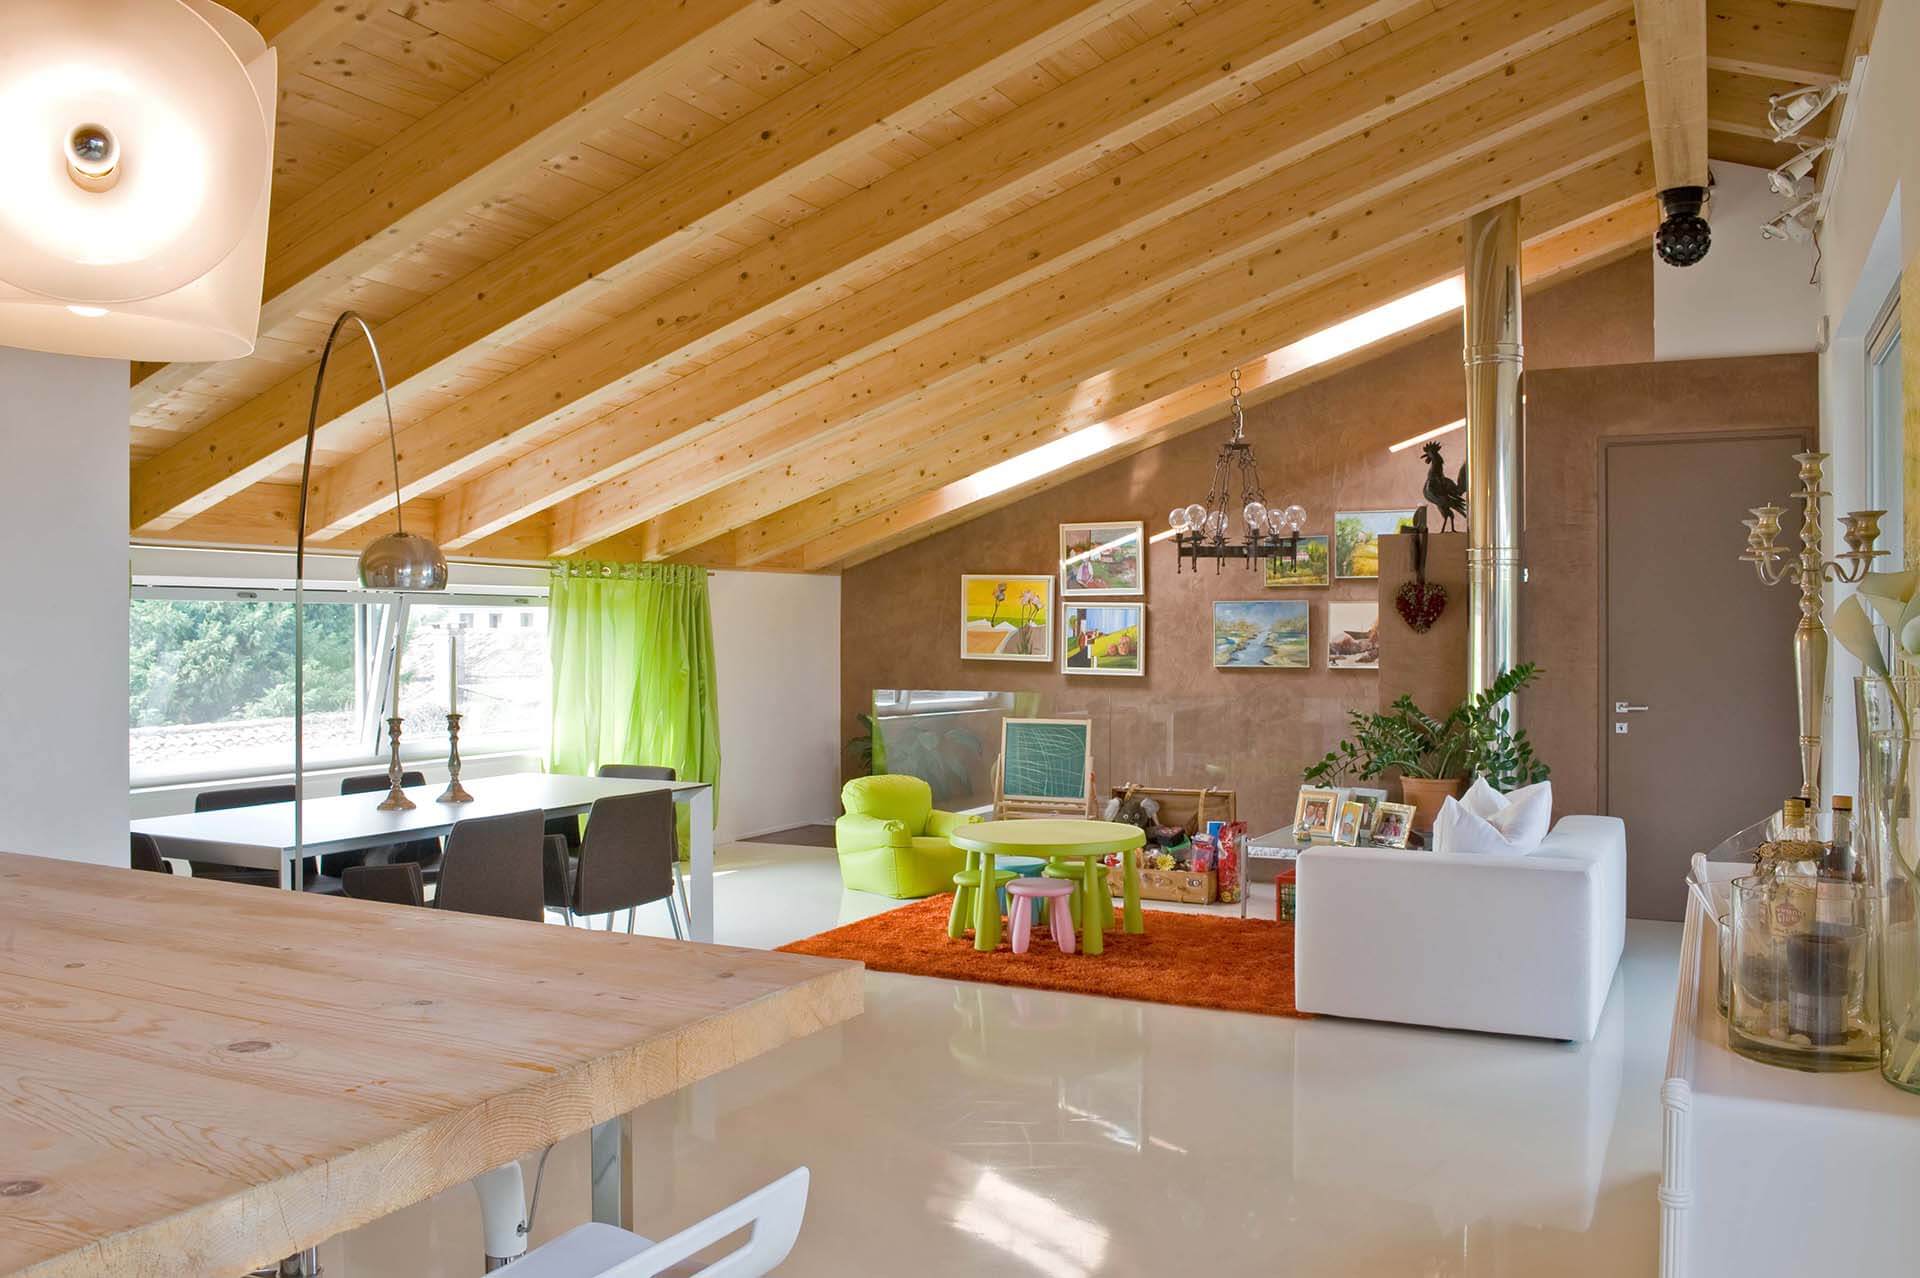 Grosso-Legnoarchitetture-tetto-in-legno-wooden house